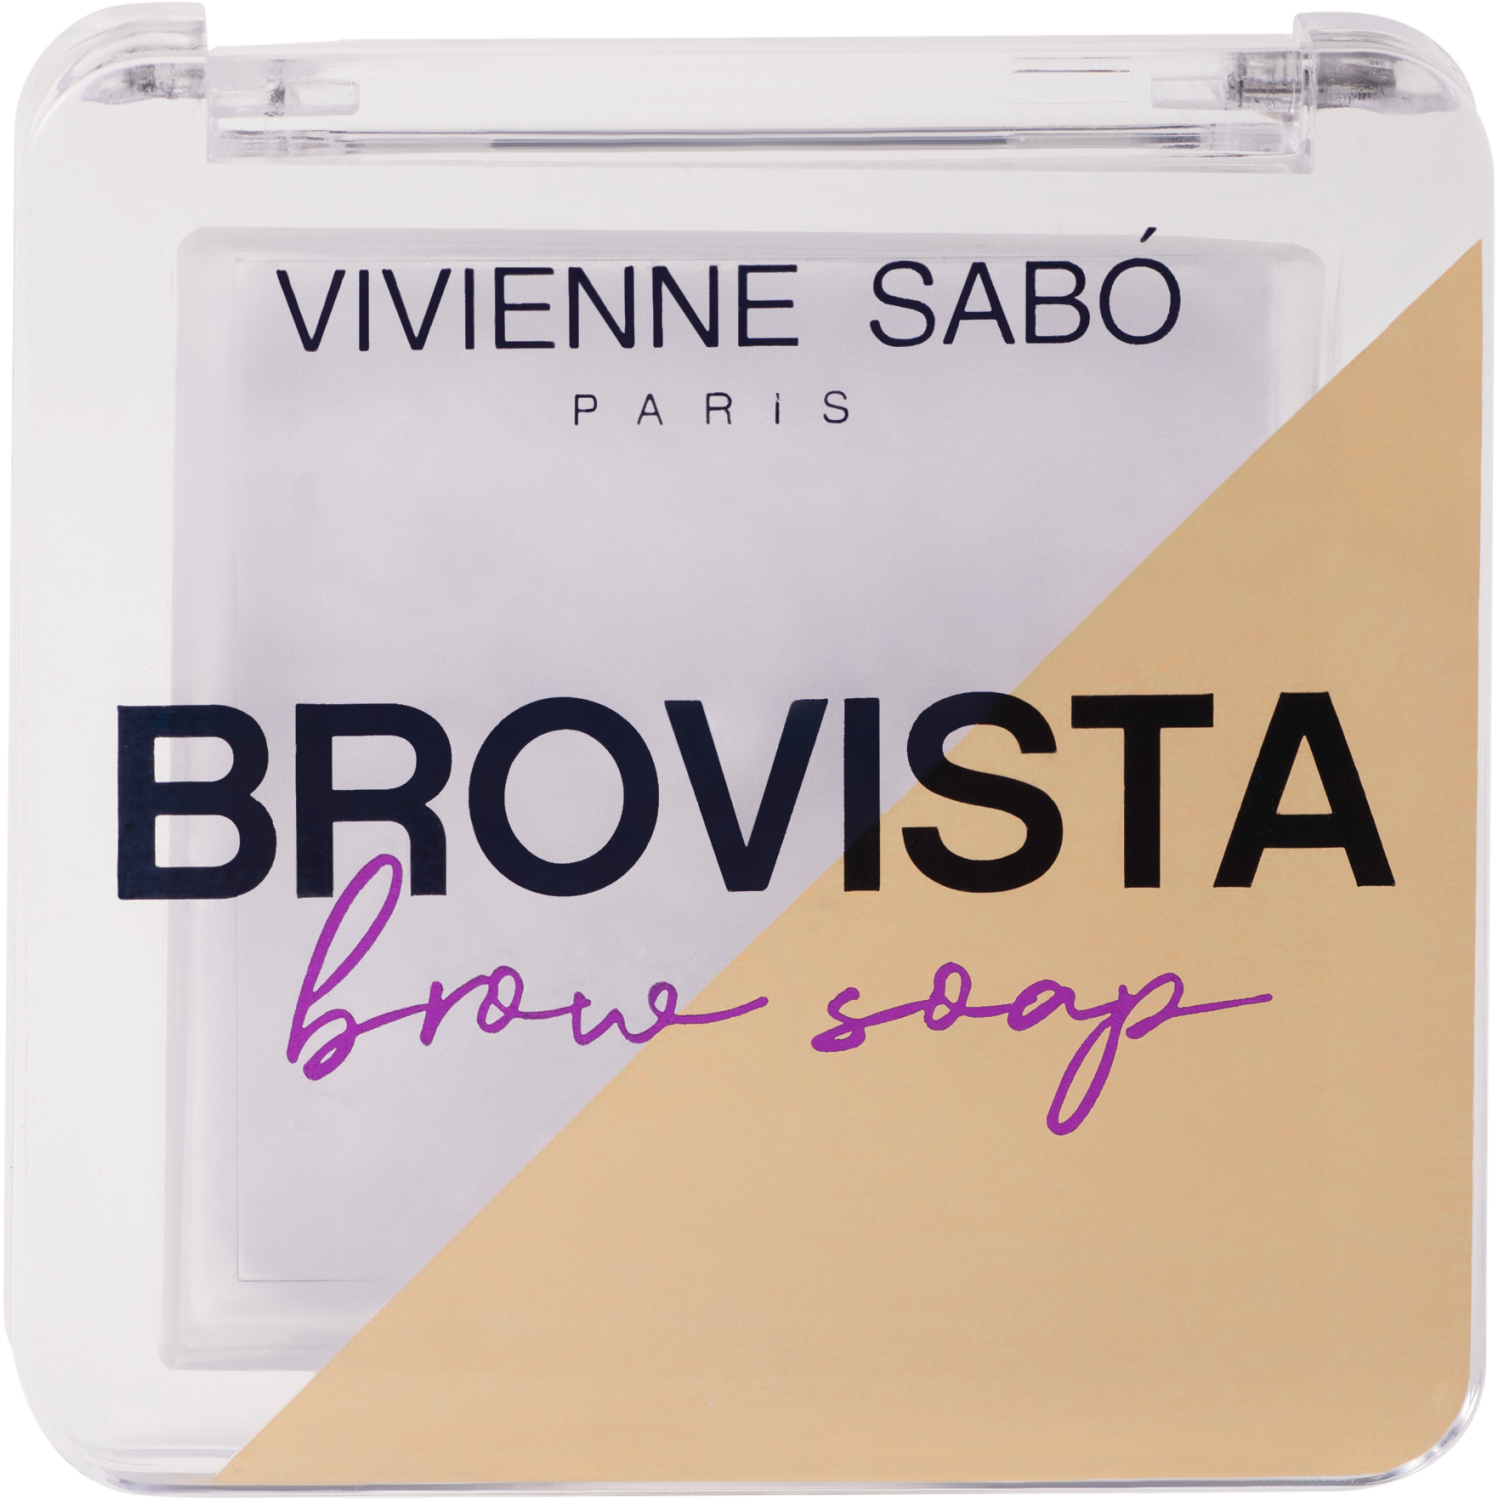 Фиксатор для бровей Vivienne Sabo Brovista brow soap, эффект ламинирования бровей, прозрачно-белесый, 3гр. тушь для бровей тон 16 тауповый